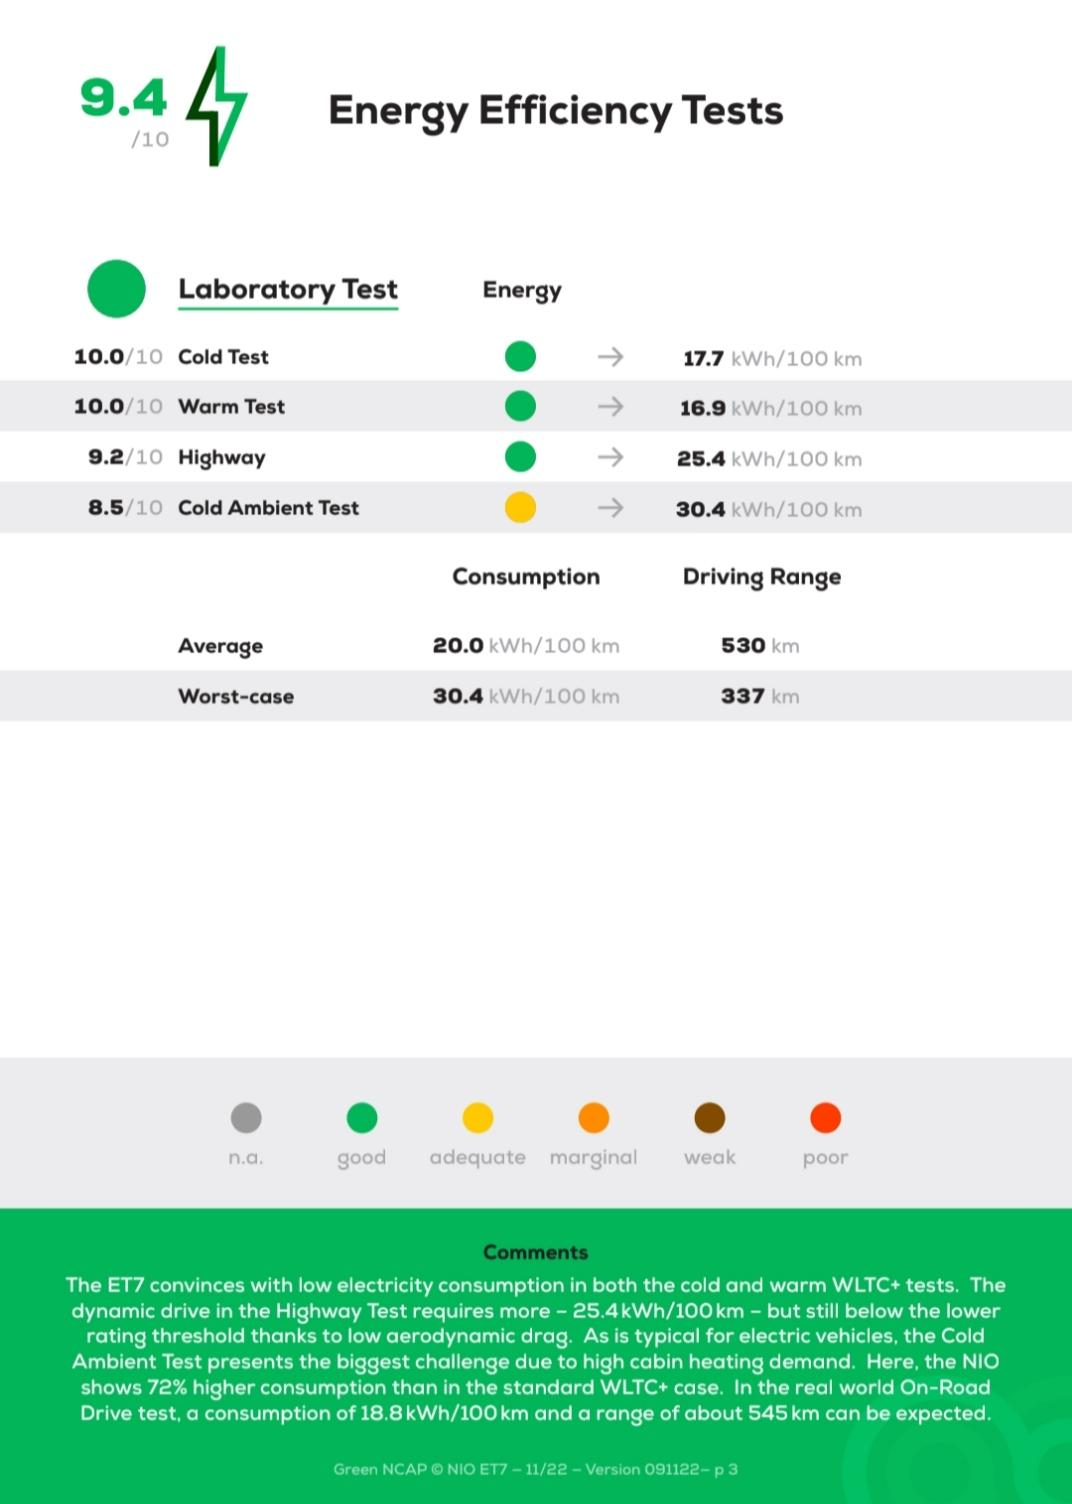 NIO Energy effeciency Test